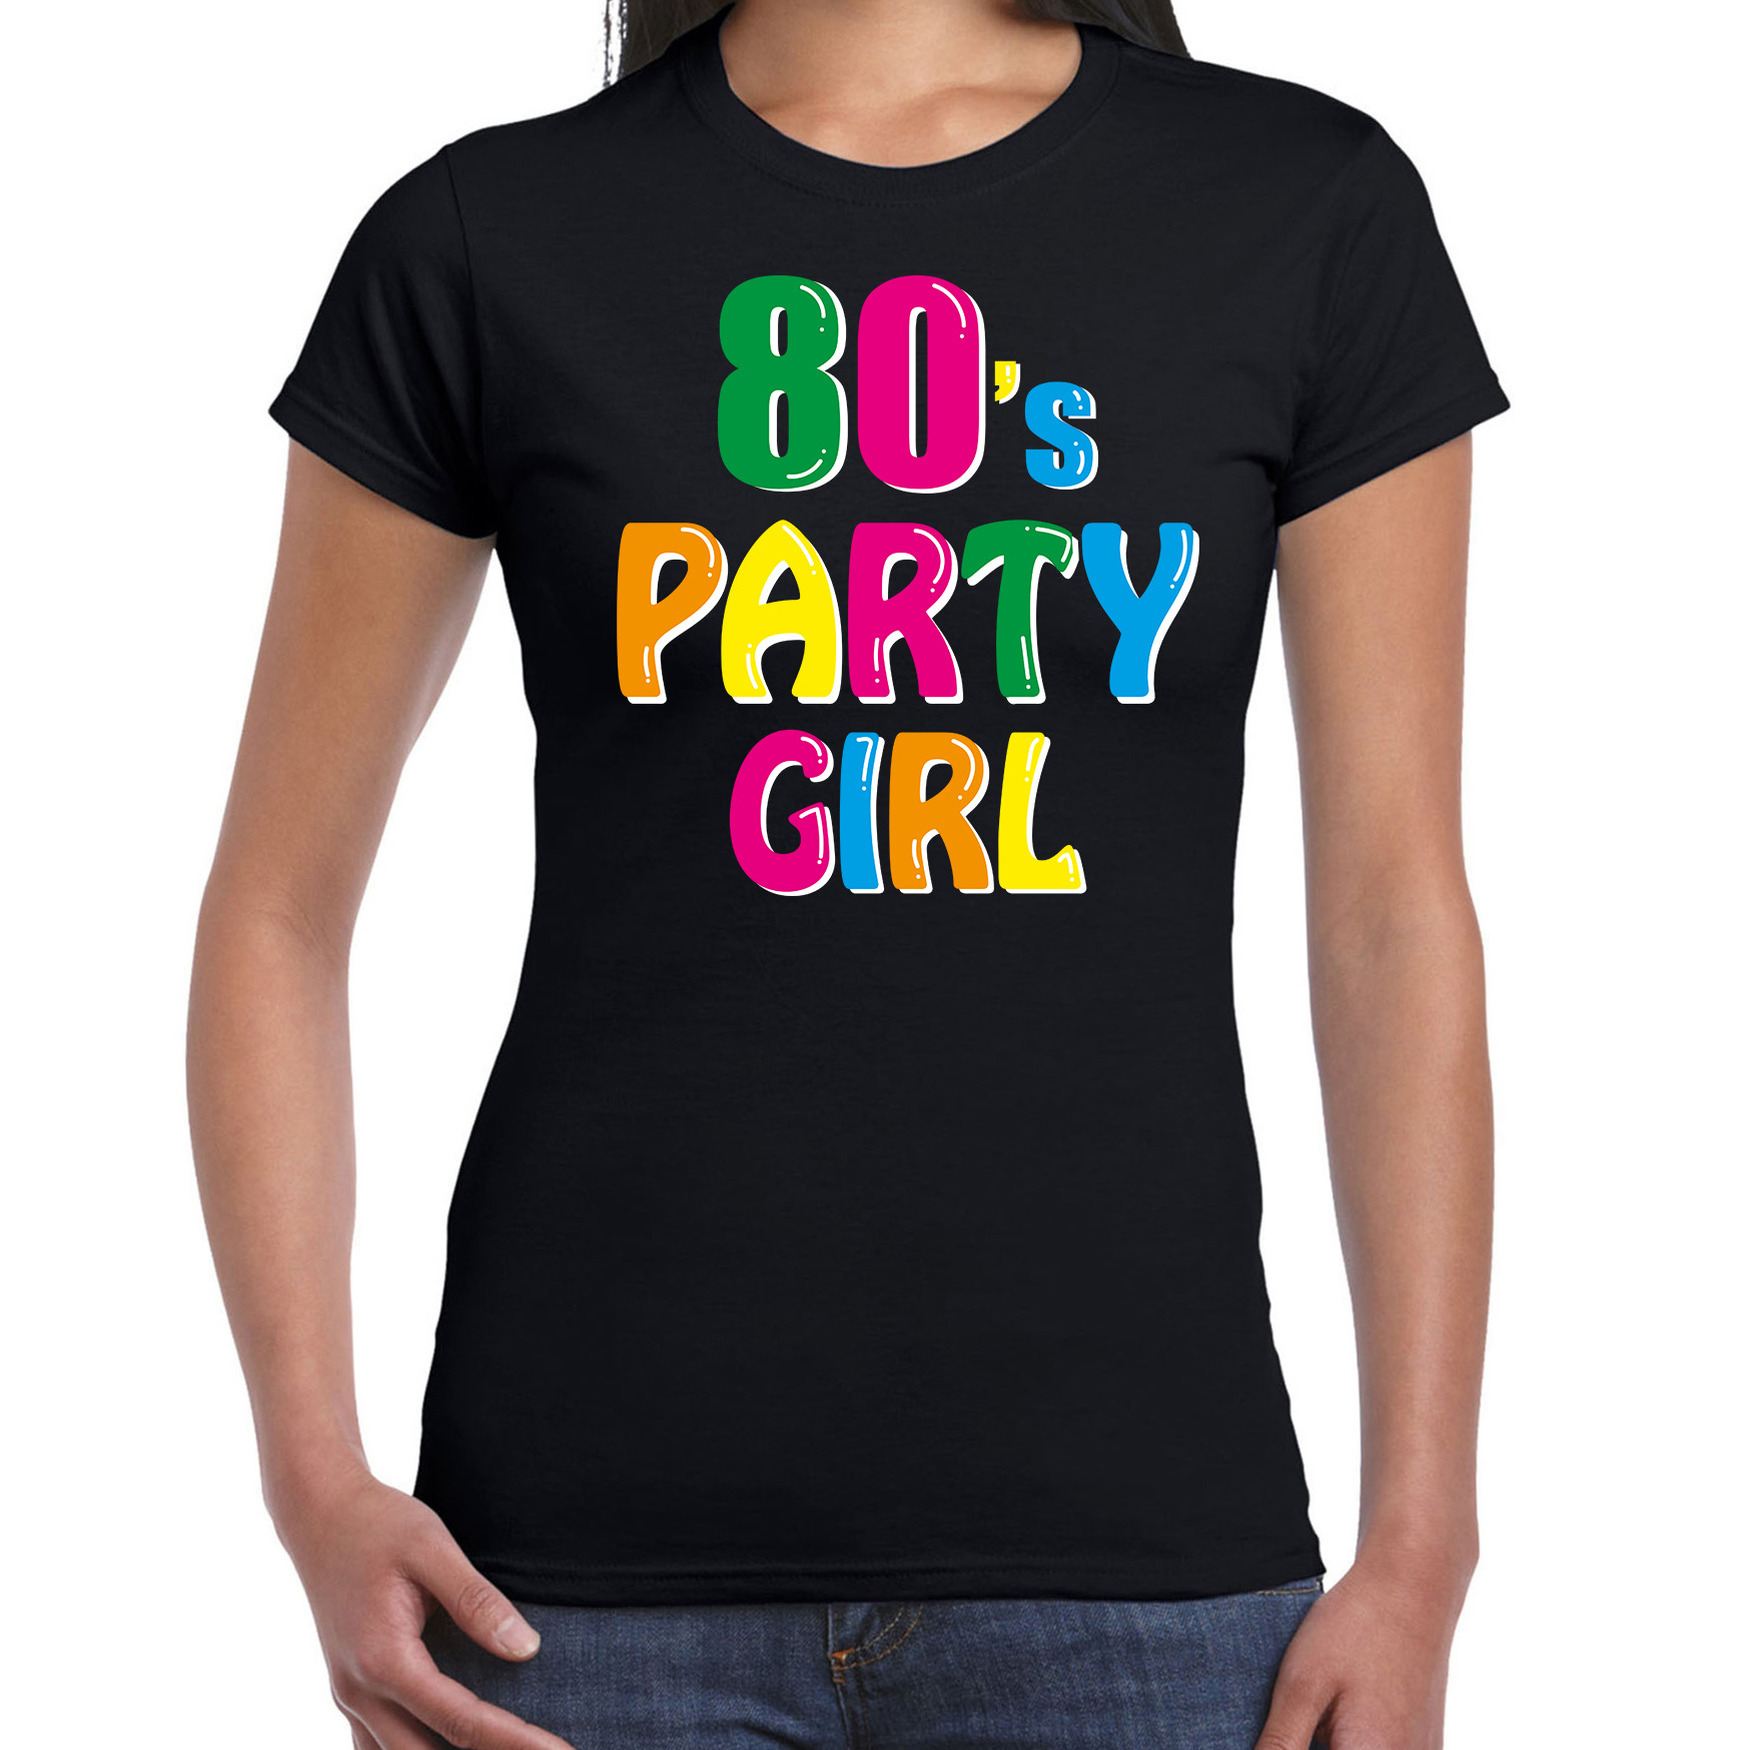 Eighties / 80s party girl verkleed feest t-shirt zwart voor dames - Jaren 80 / tachtig verkleden